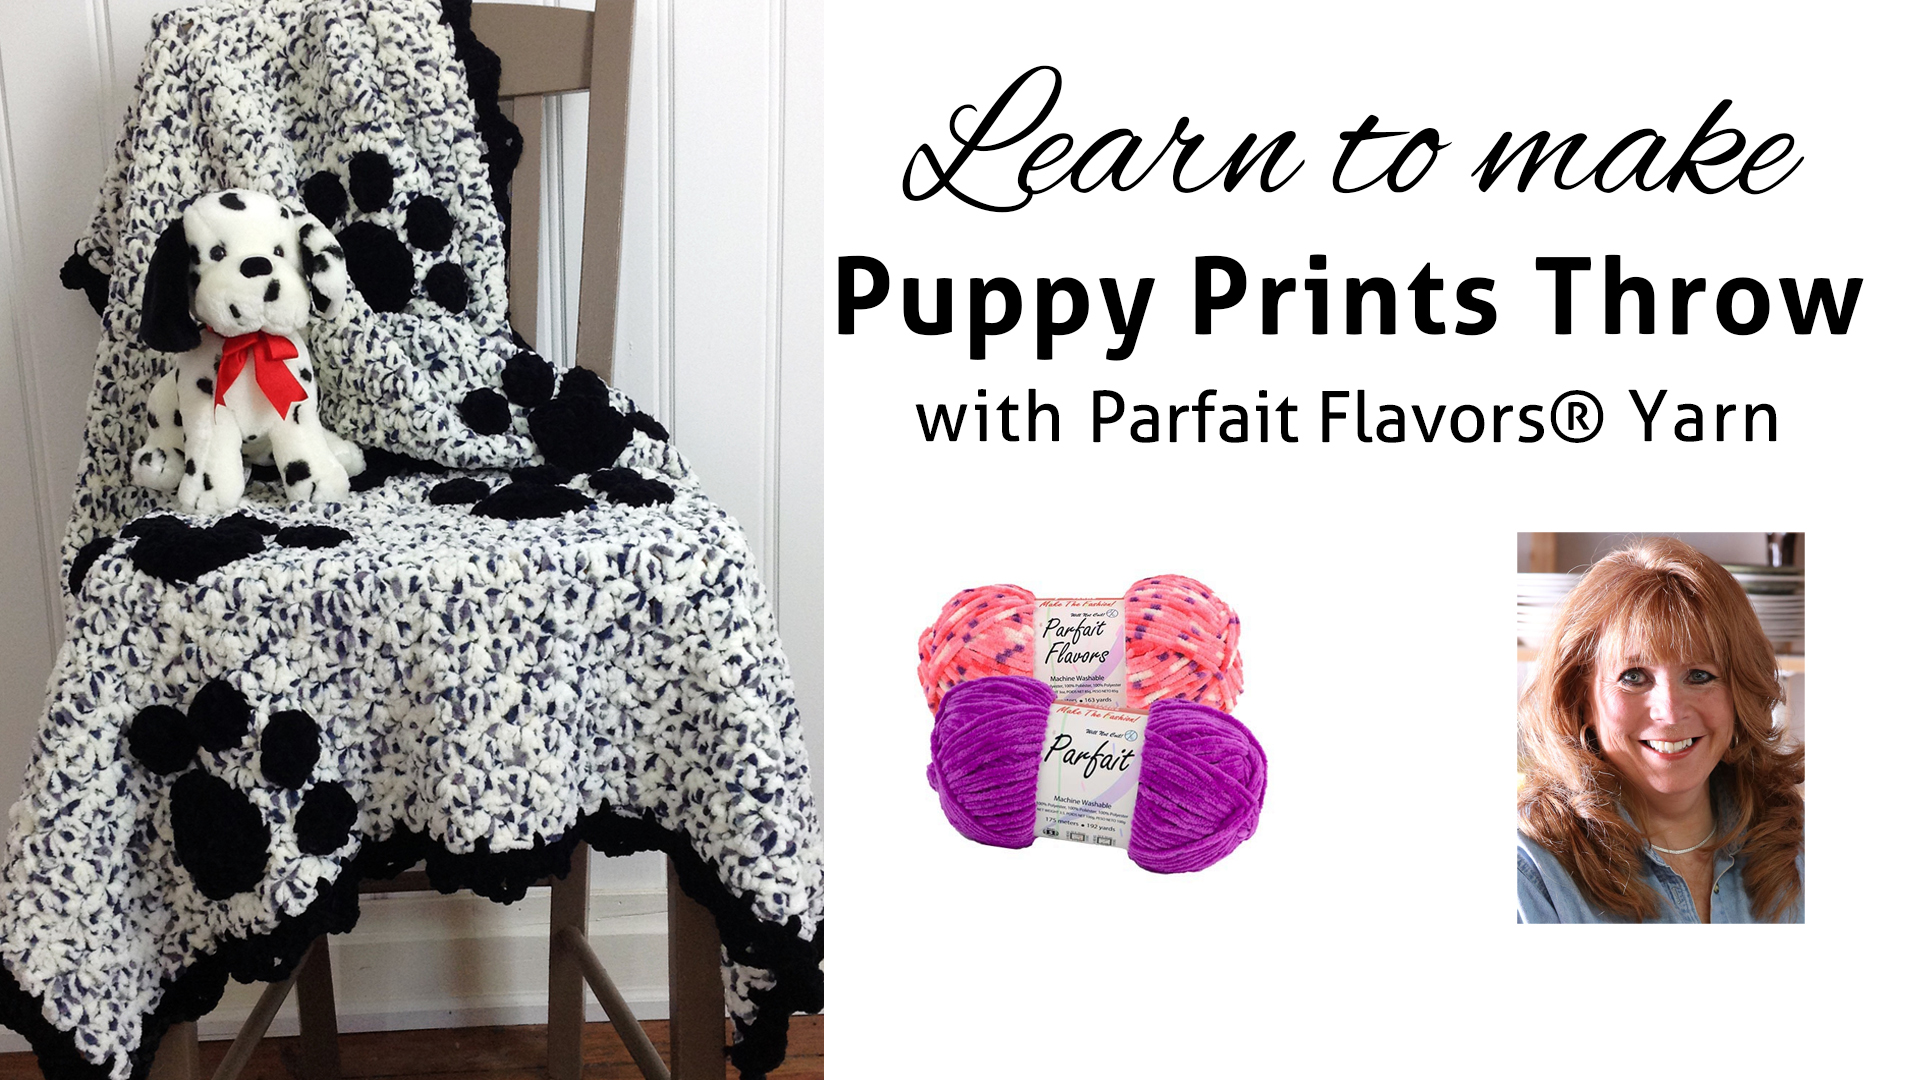 beginning-parfait-flavors-puppy-prints-throw-free-pattern